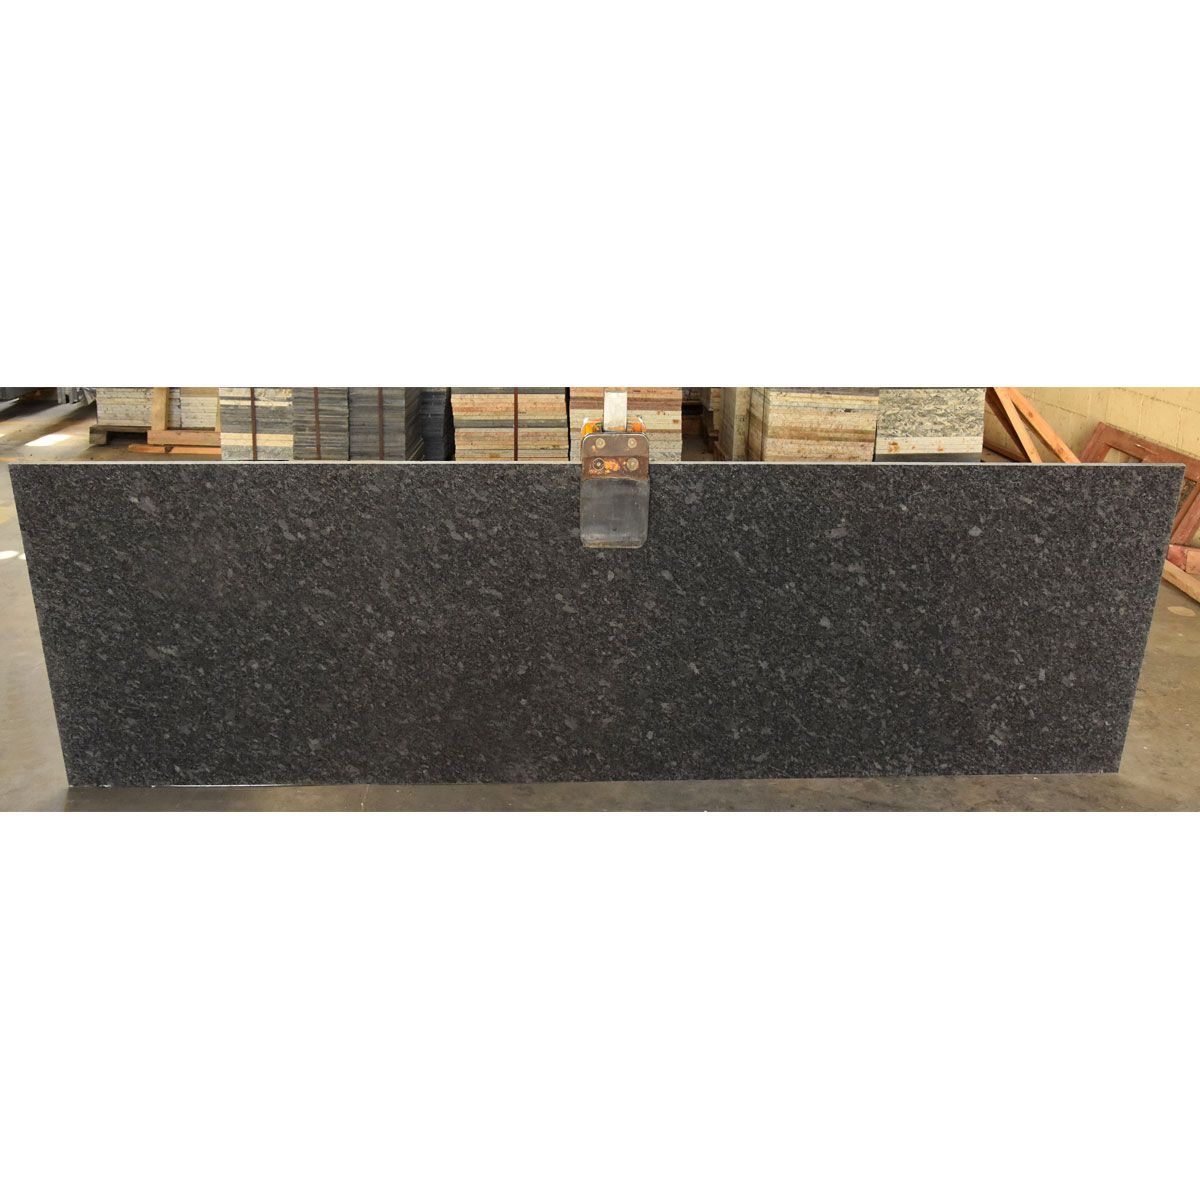 Pasy granit Steel Grey leather 231-315x82-97x3 cm